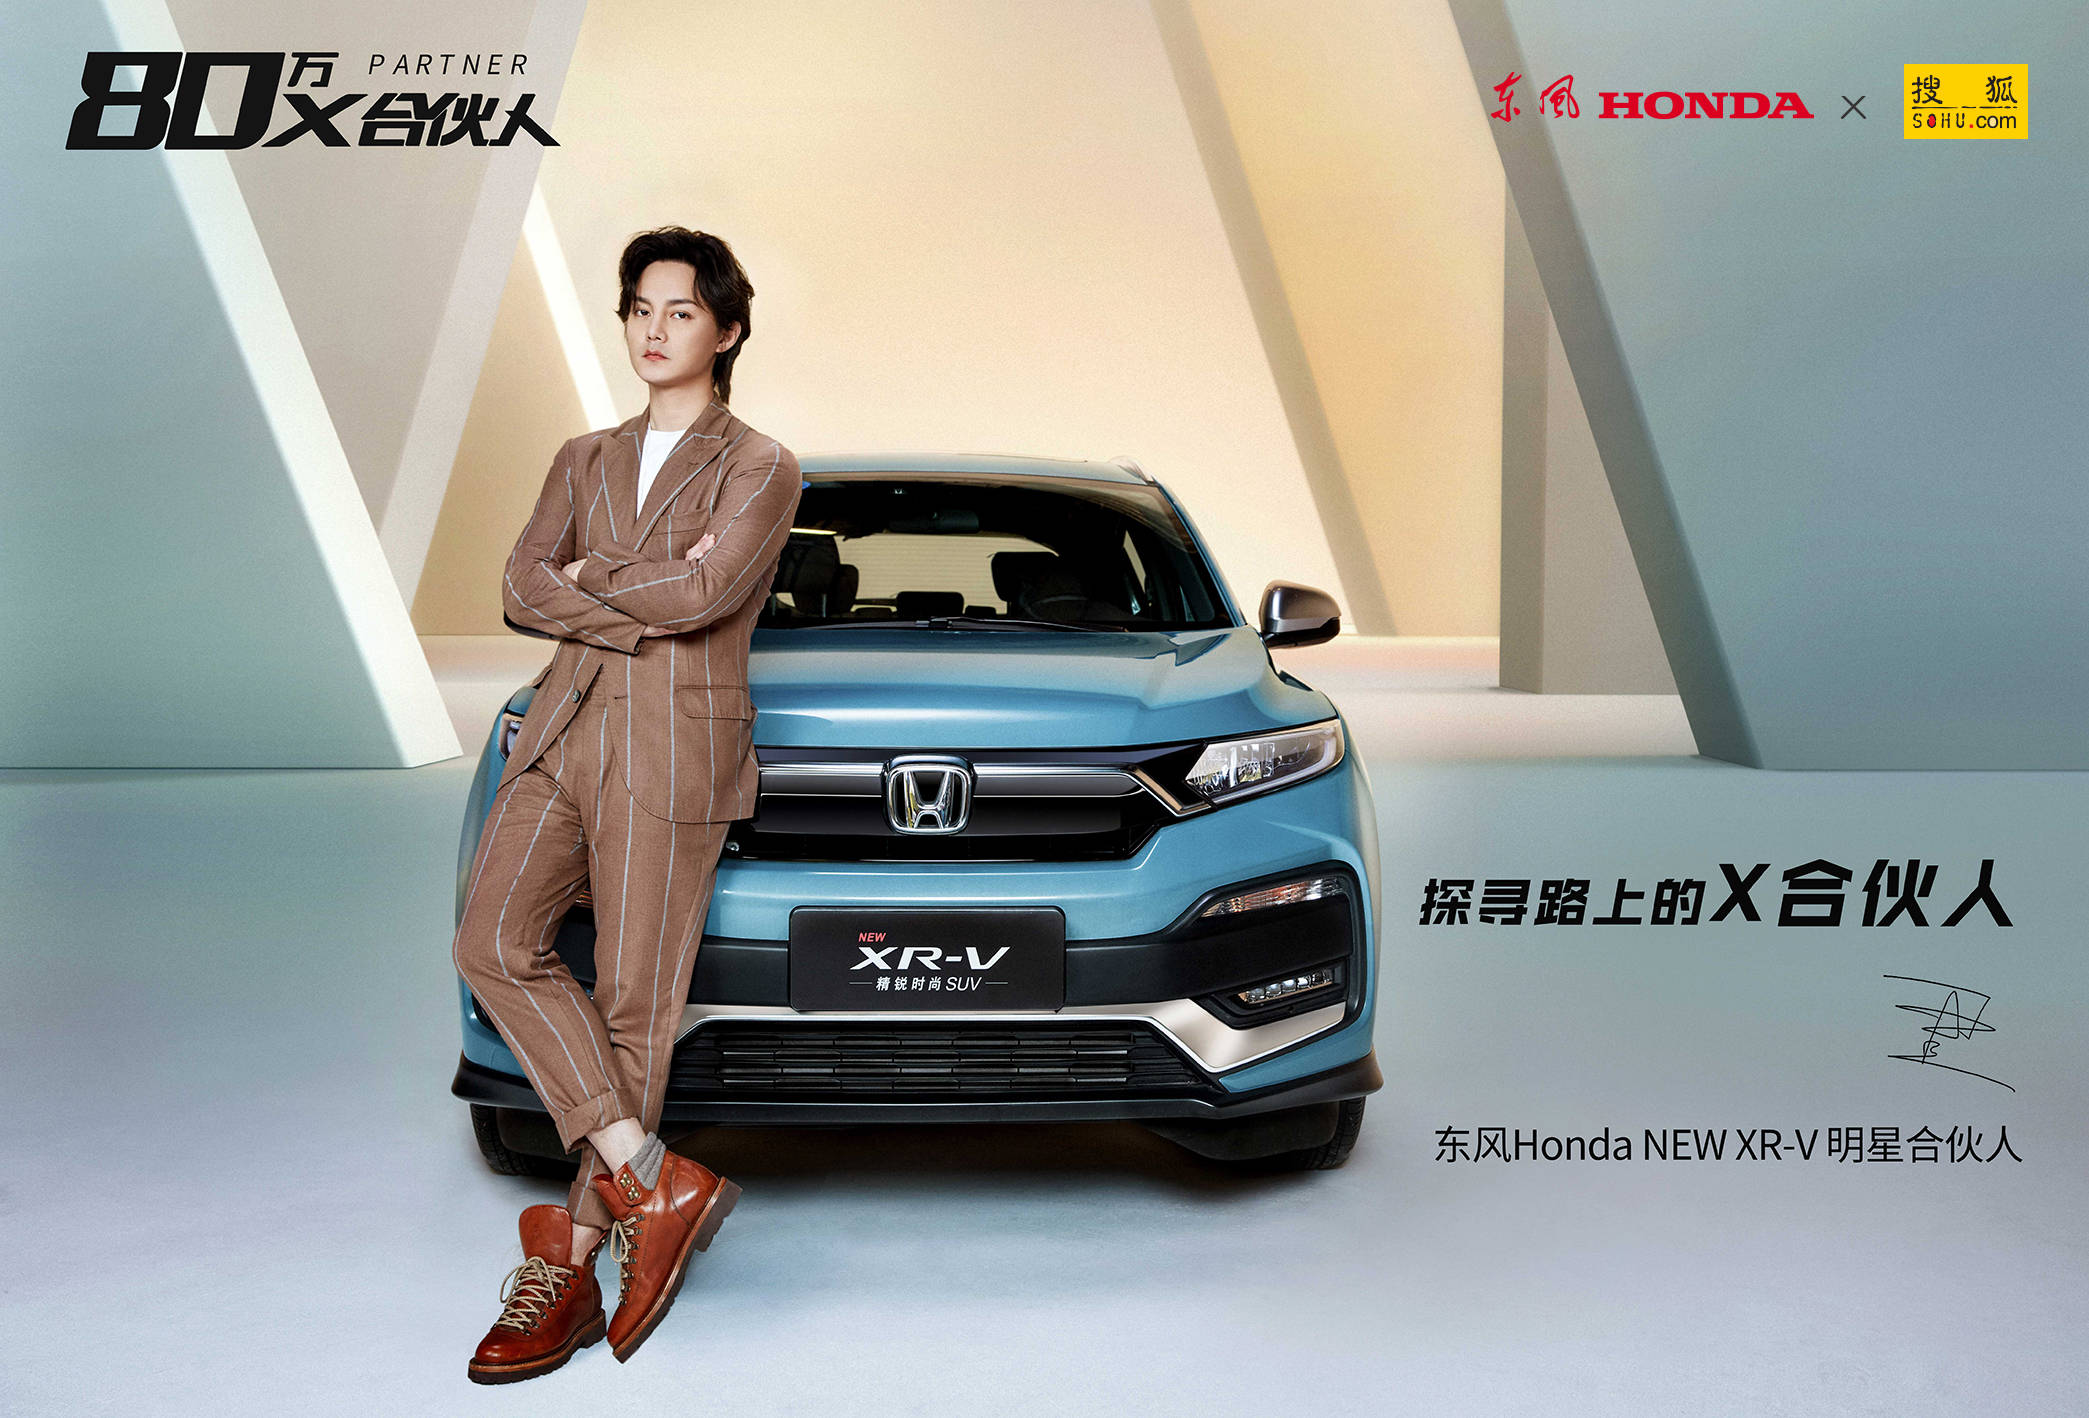 尹正：东风Honda全新XR-V明星合伙人，探寻未来，突破自我！